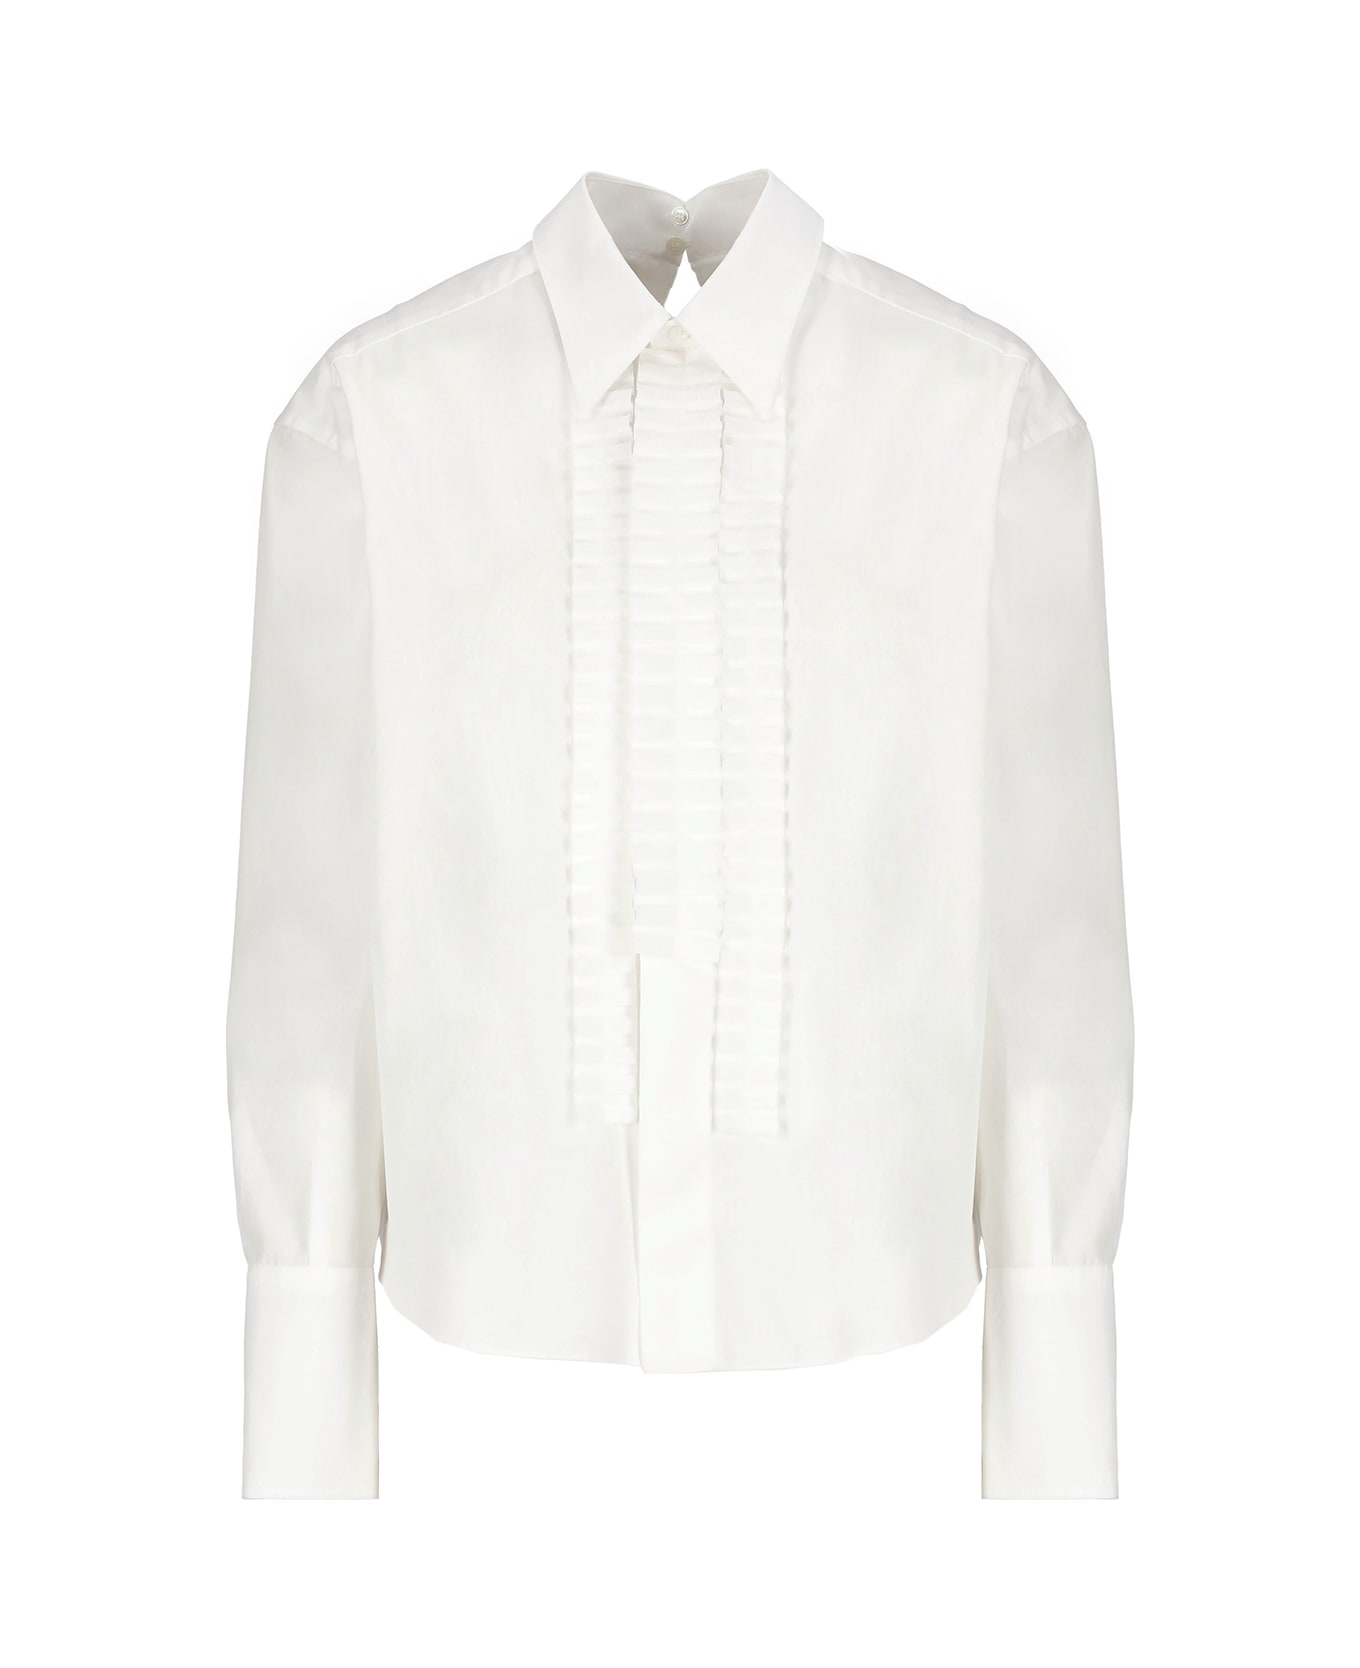 Marni Cotton Shirt - White